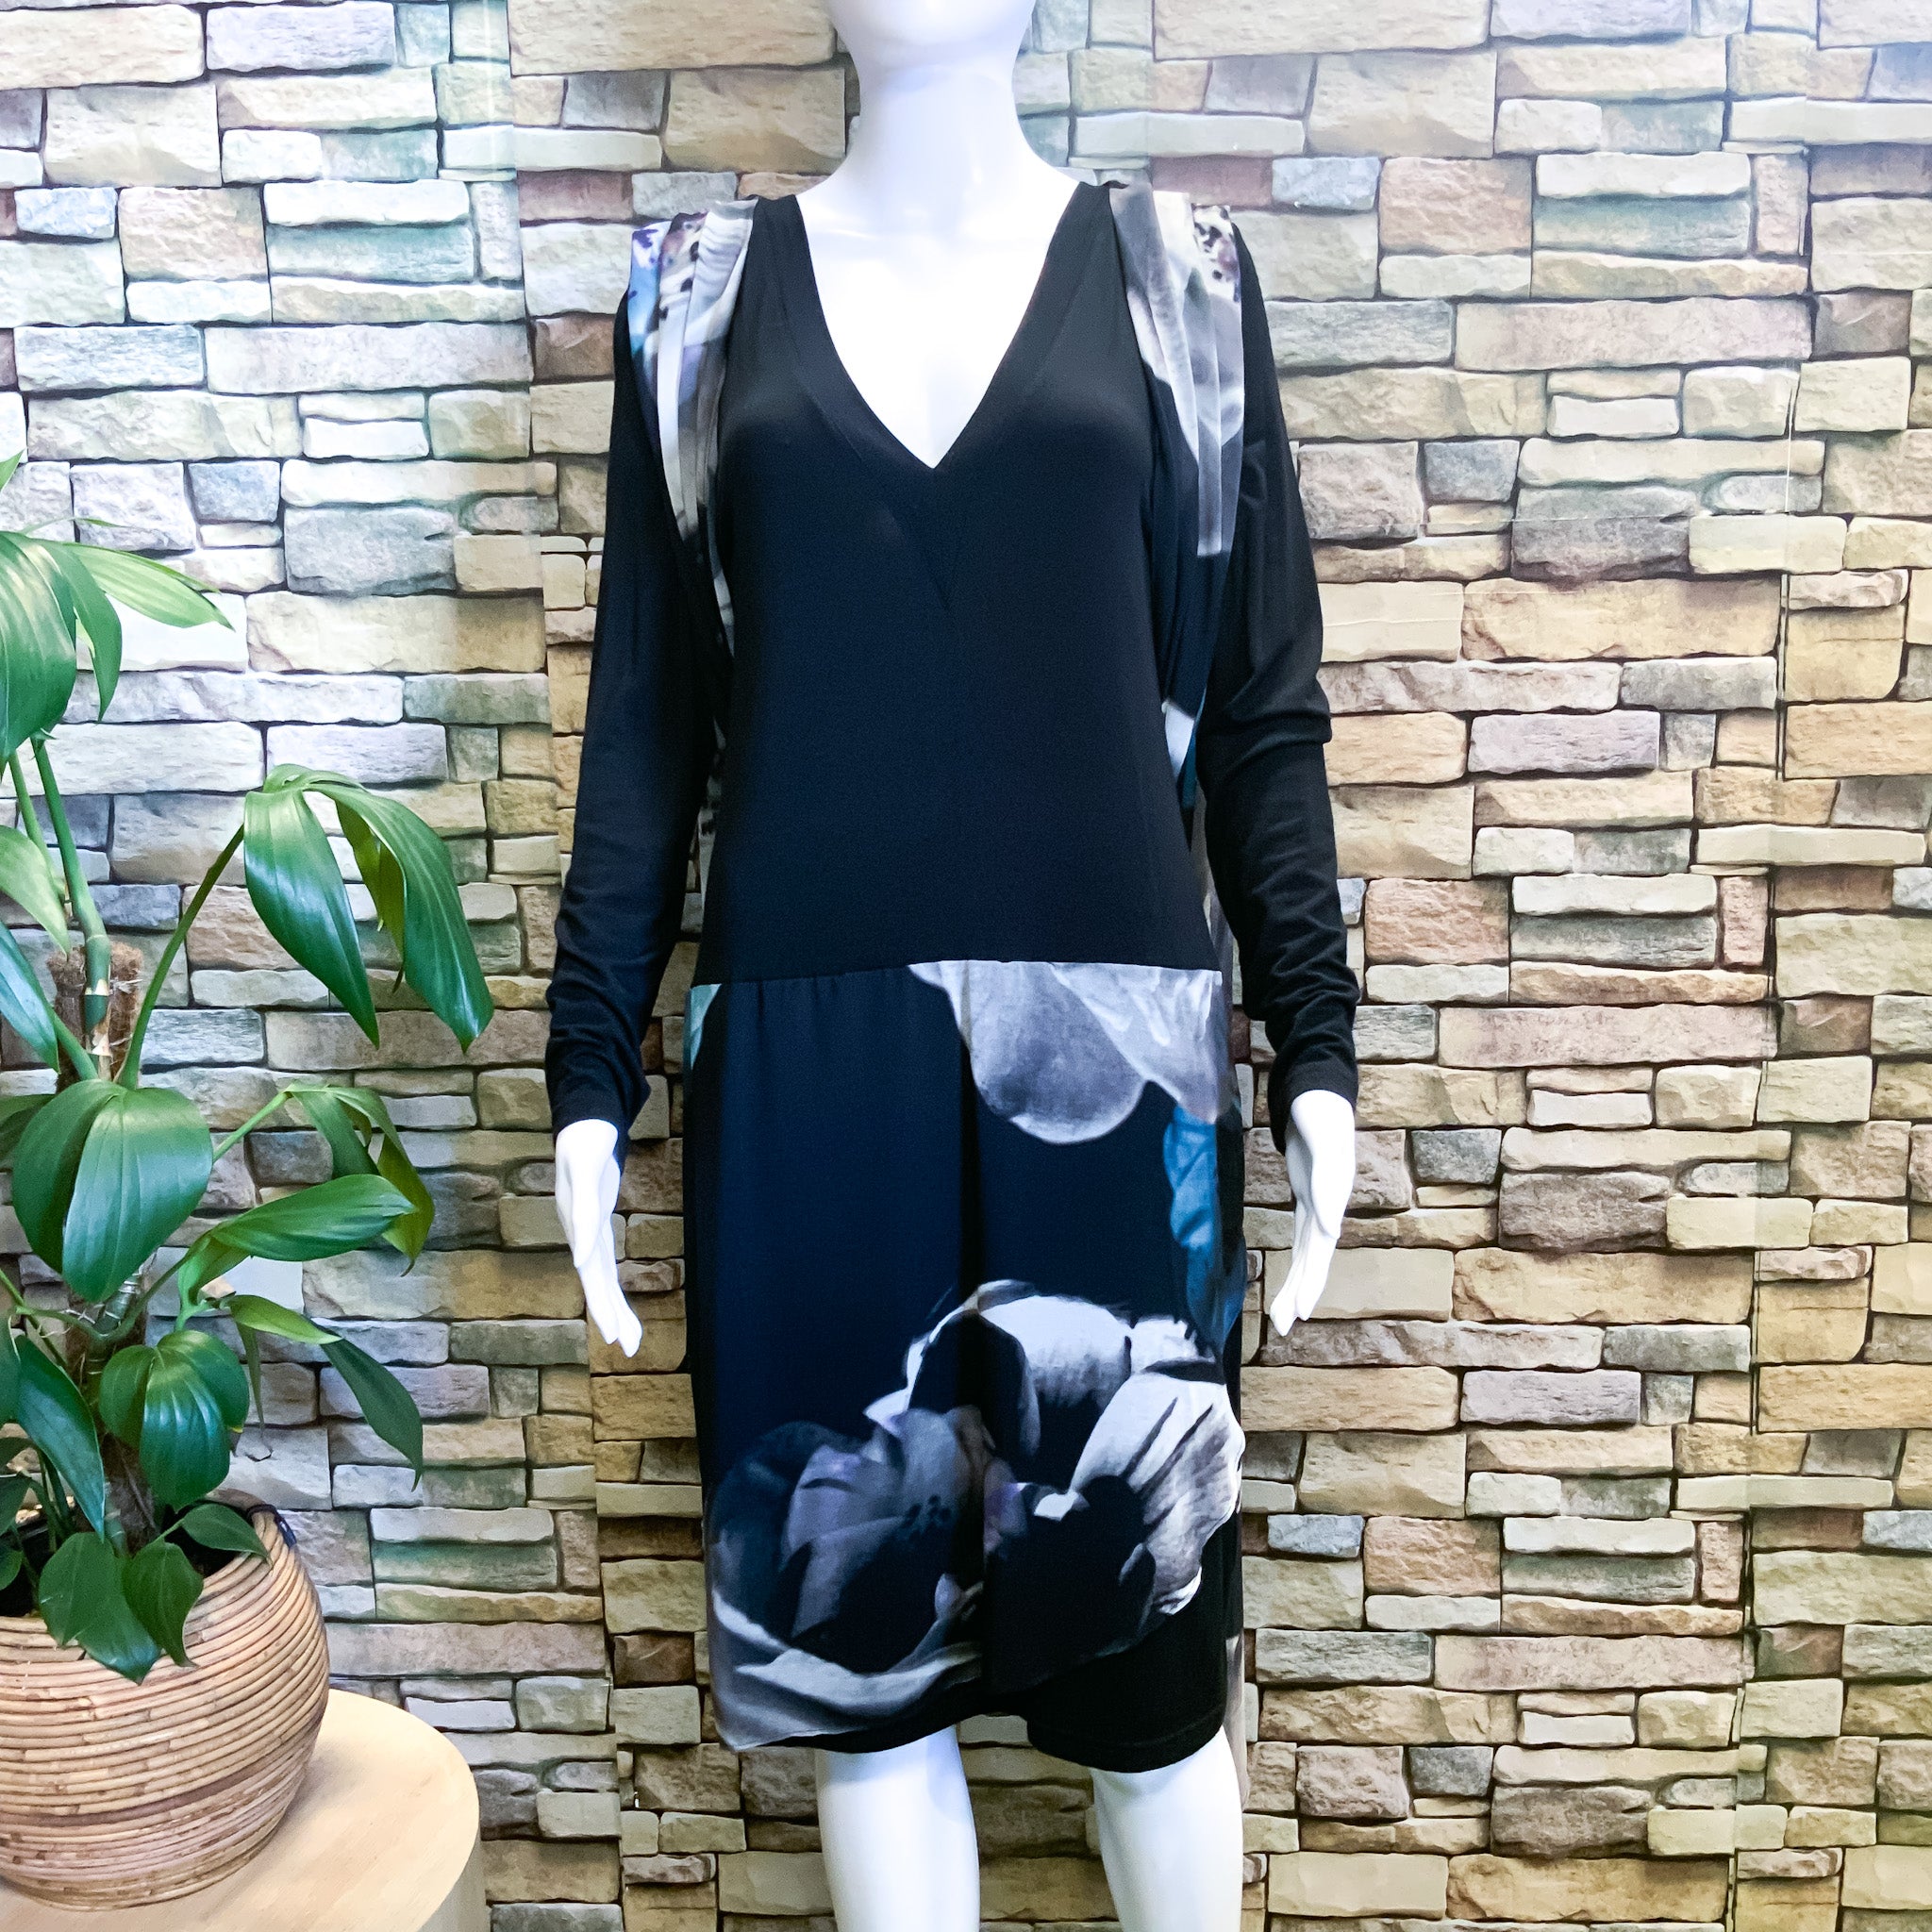 WAYNE COOPER Black Long Sleeves V-Neck Long Back Dress - Size 12